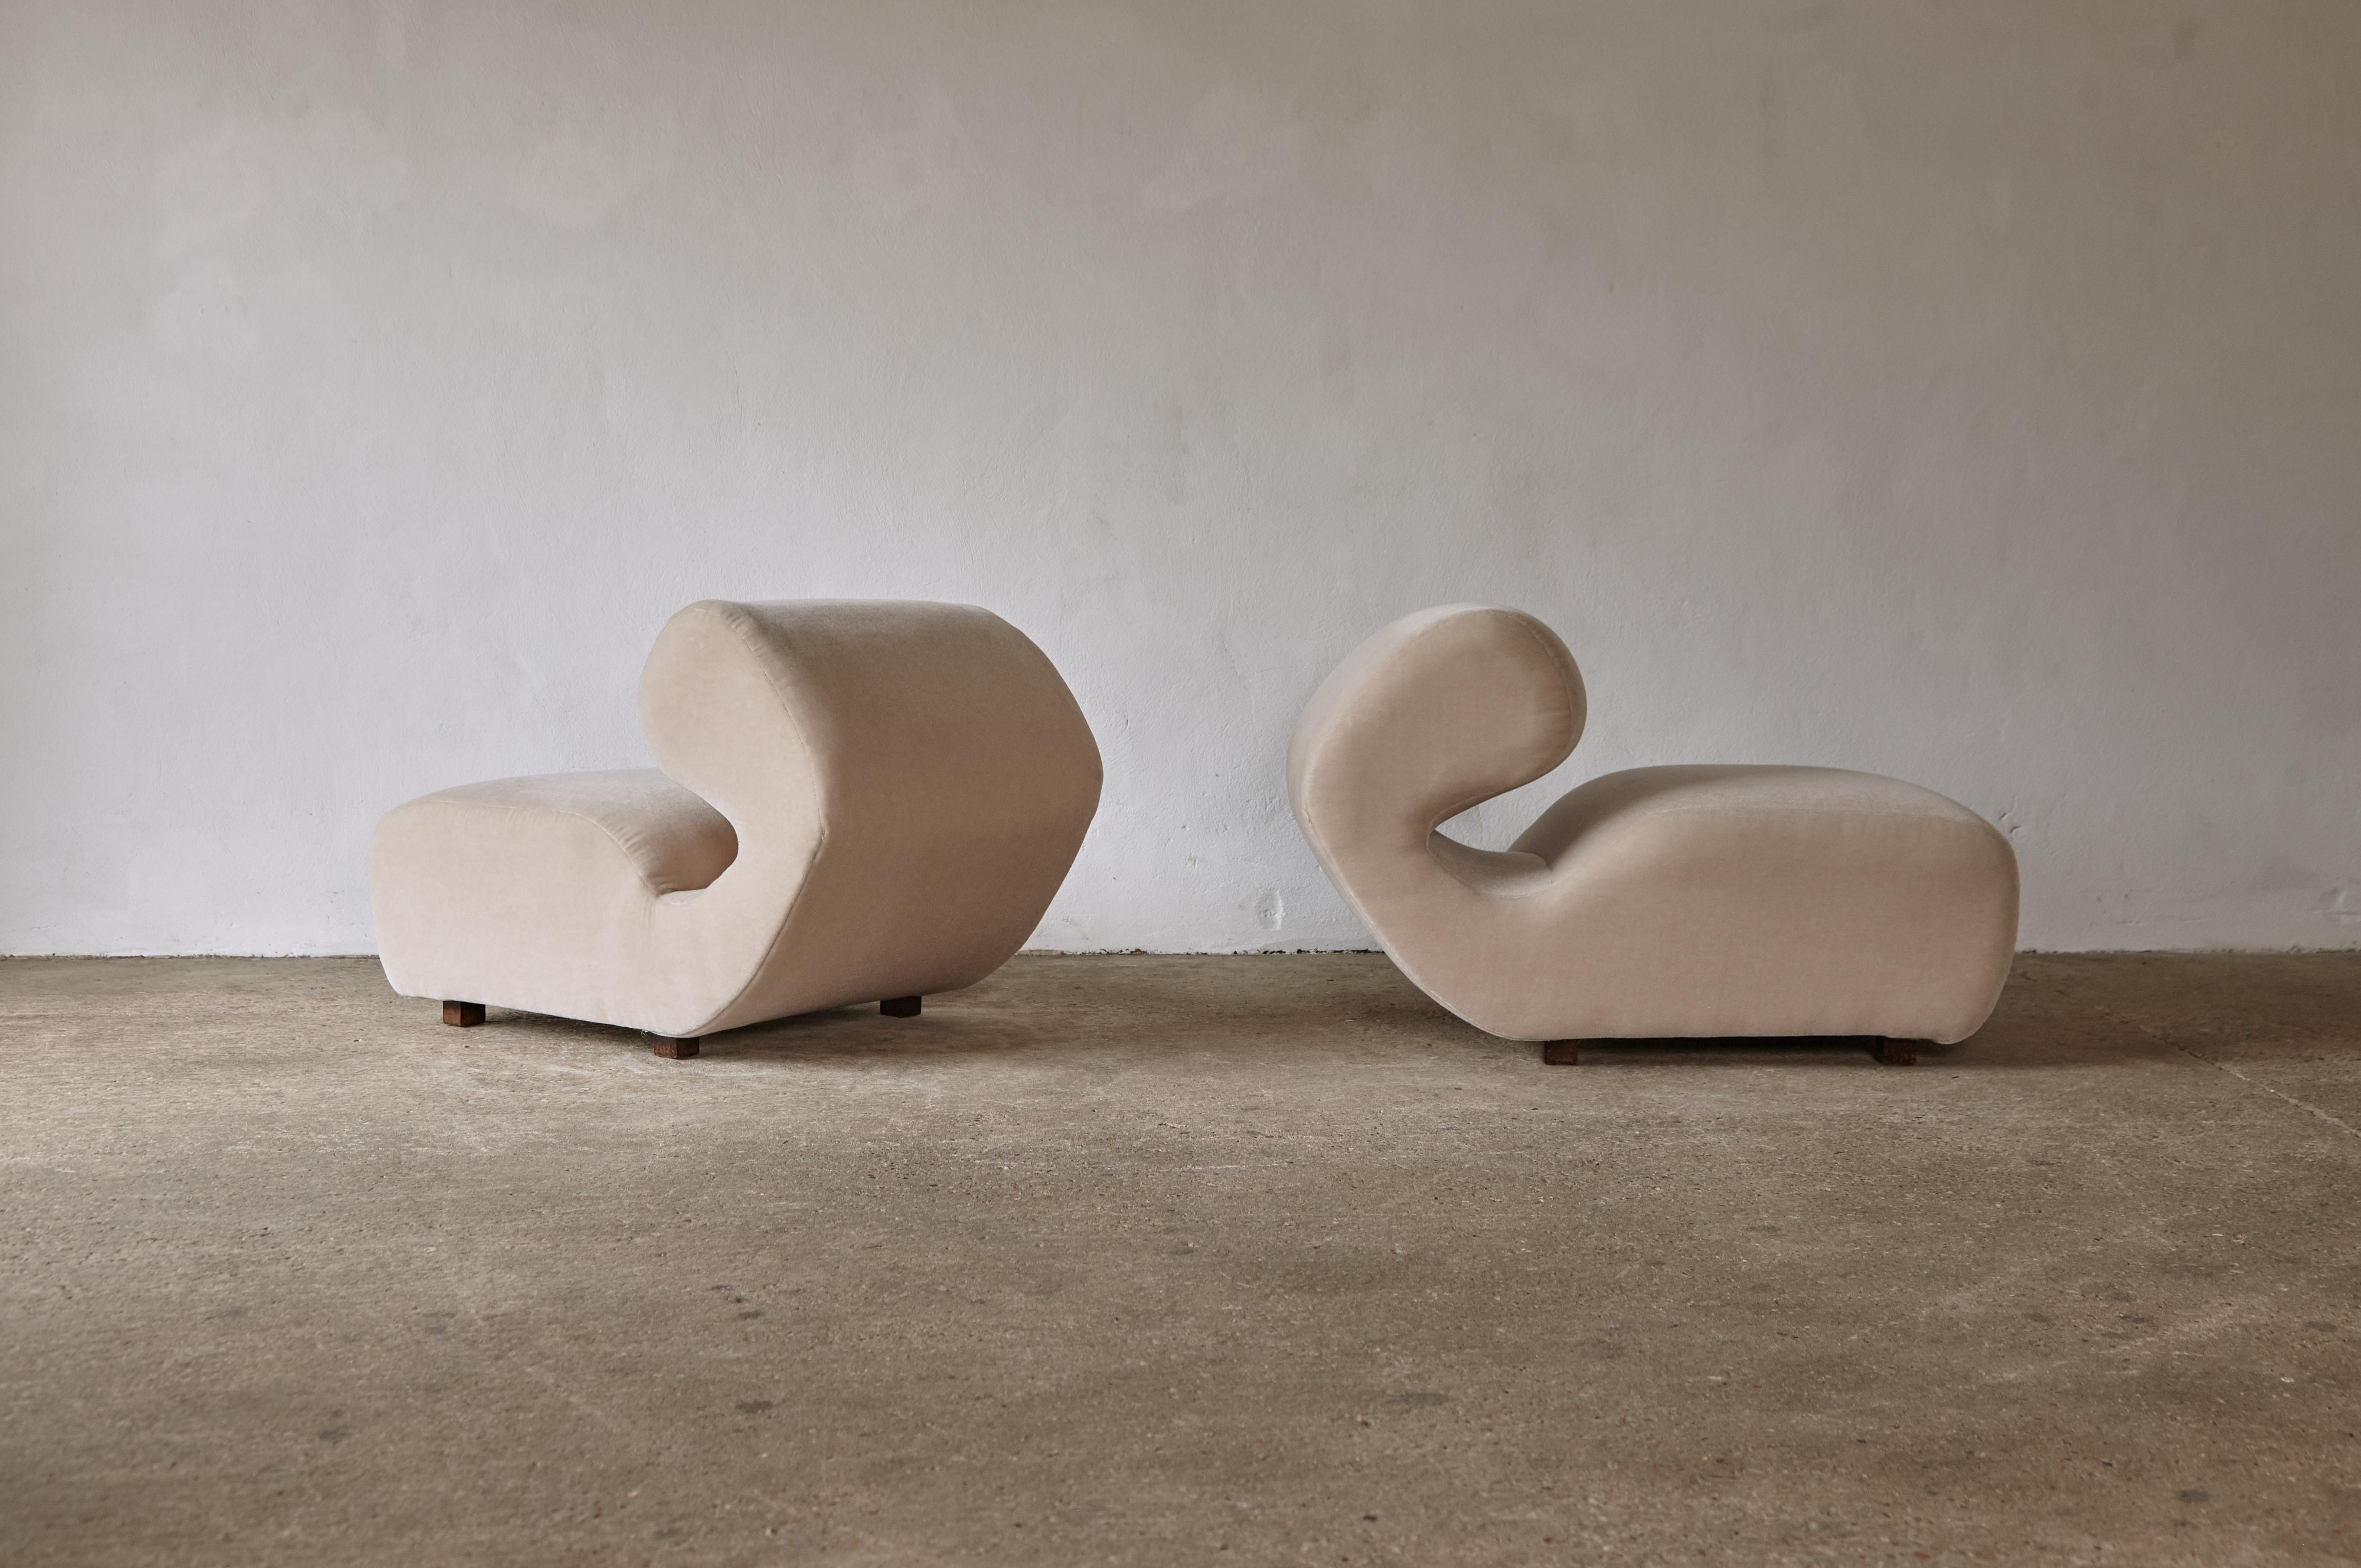 Superbe paire de chaises de salon incurvées, italiennes,  Années 1970/80.  Nouvellement revêtu d'un tissu ivoire 100% mohair de première qualité.  Expédition rapide dans le monde entier.
  


